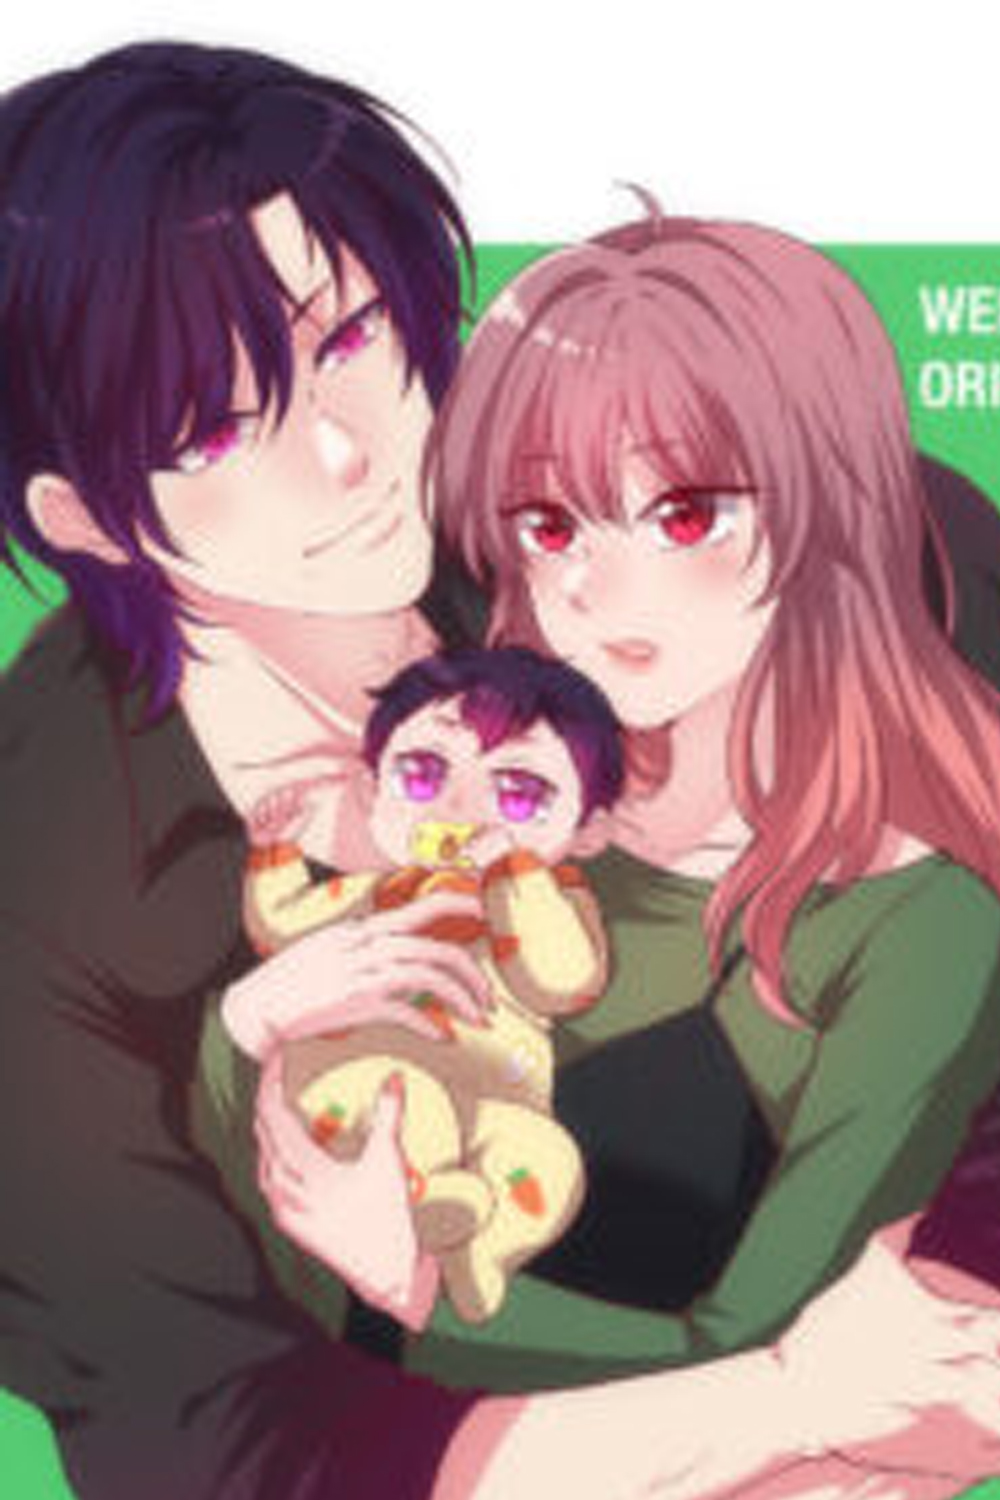 Child Custody Manga